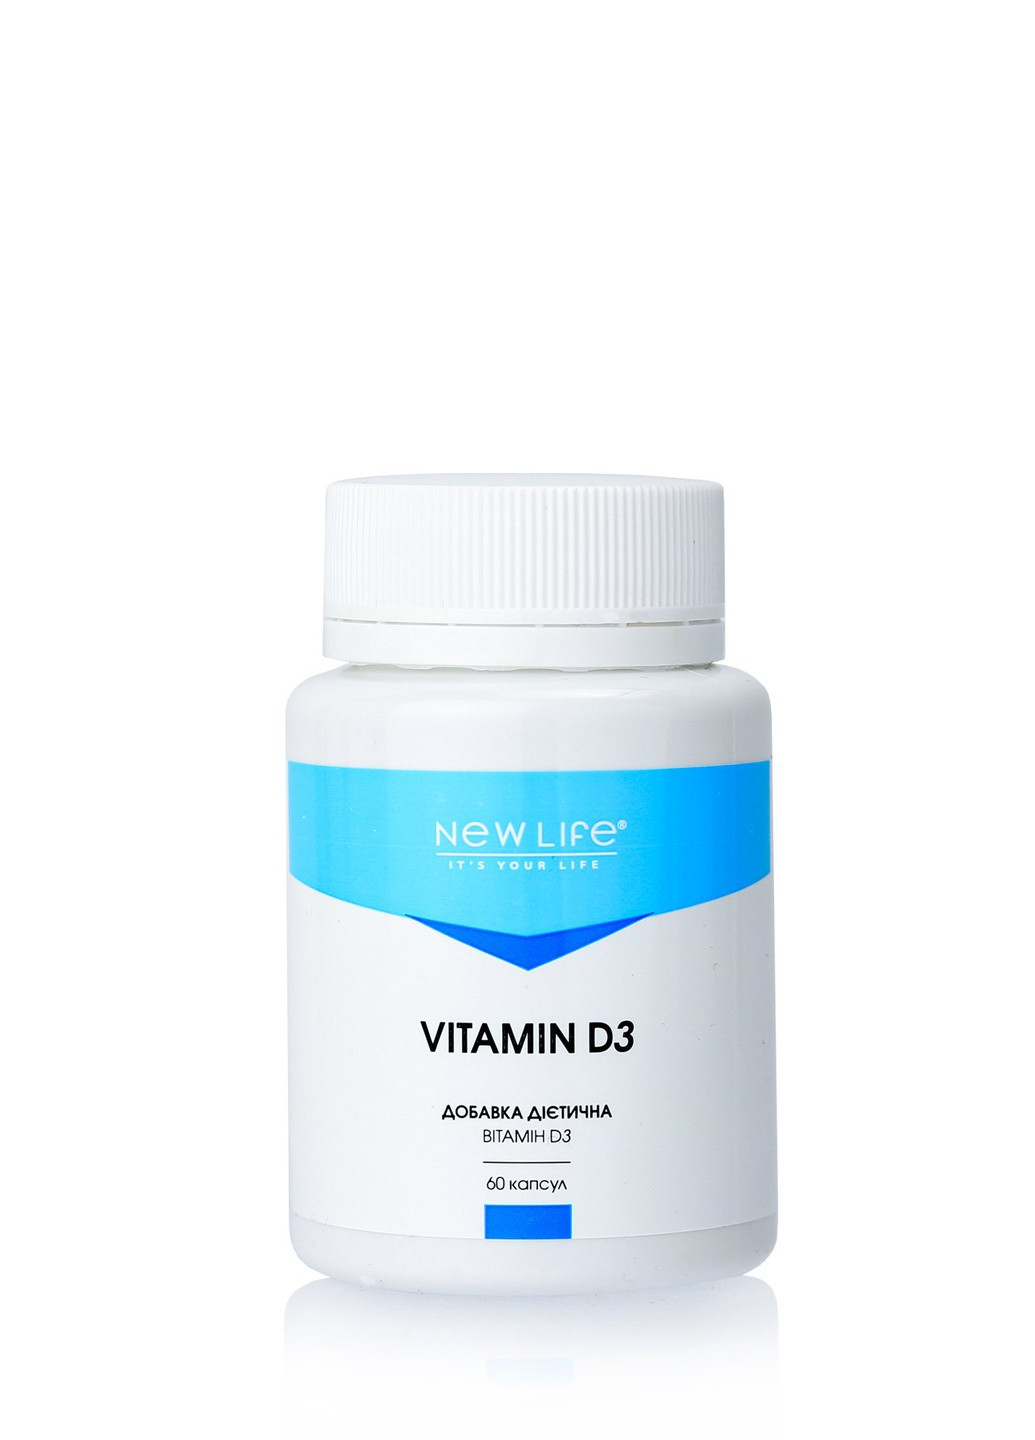 Дієтична добавка Вітамін D3, Vitamin D3 - для здоров'я кісток, щитовидної залози, дя нормального згортання крові, 60 капсул New LIFE (257783512)